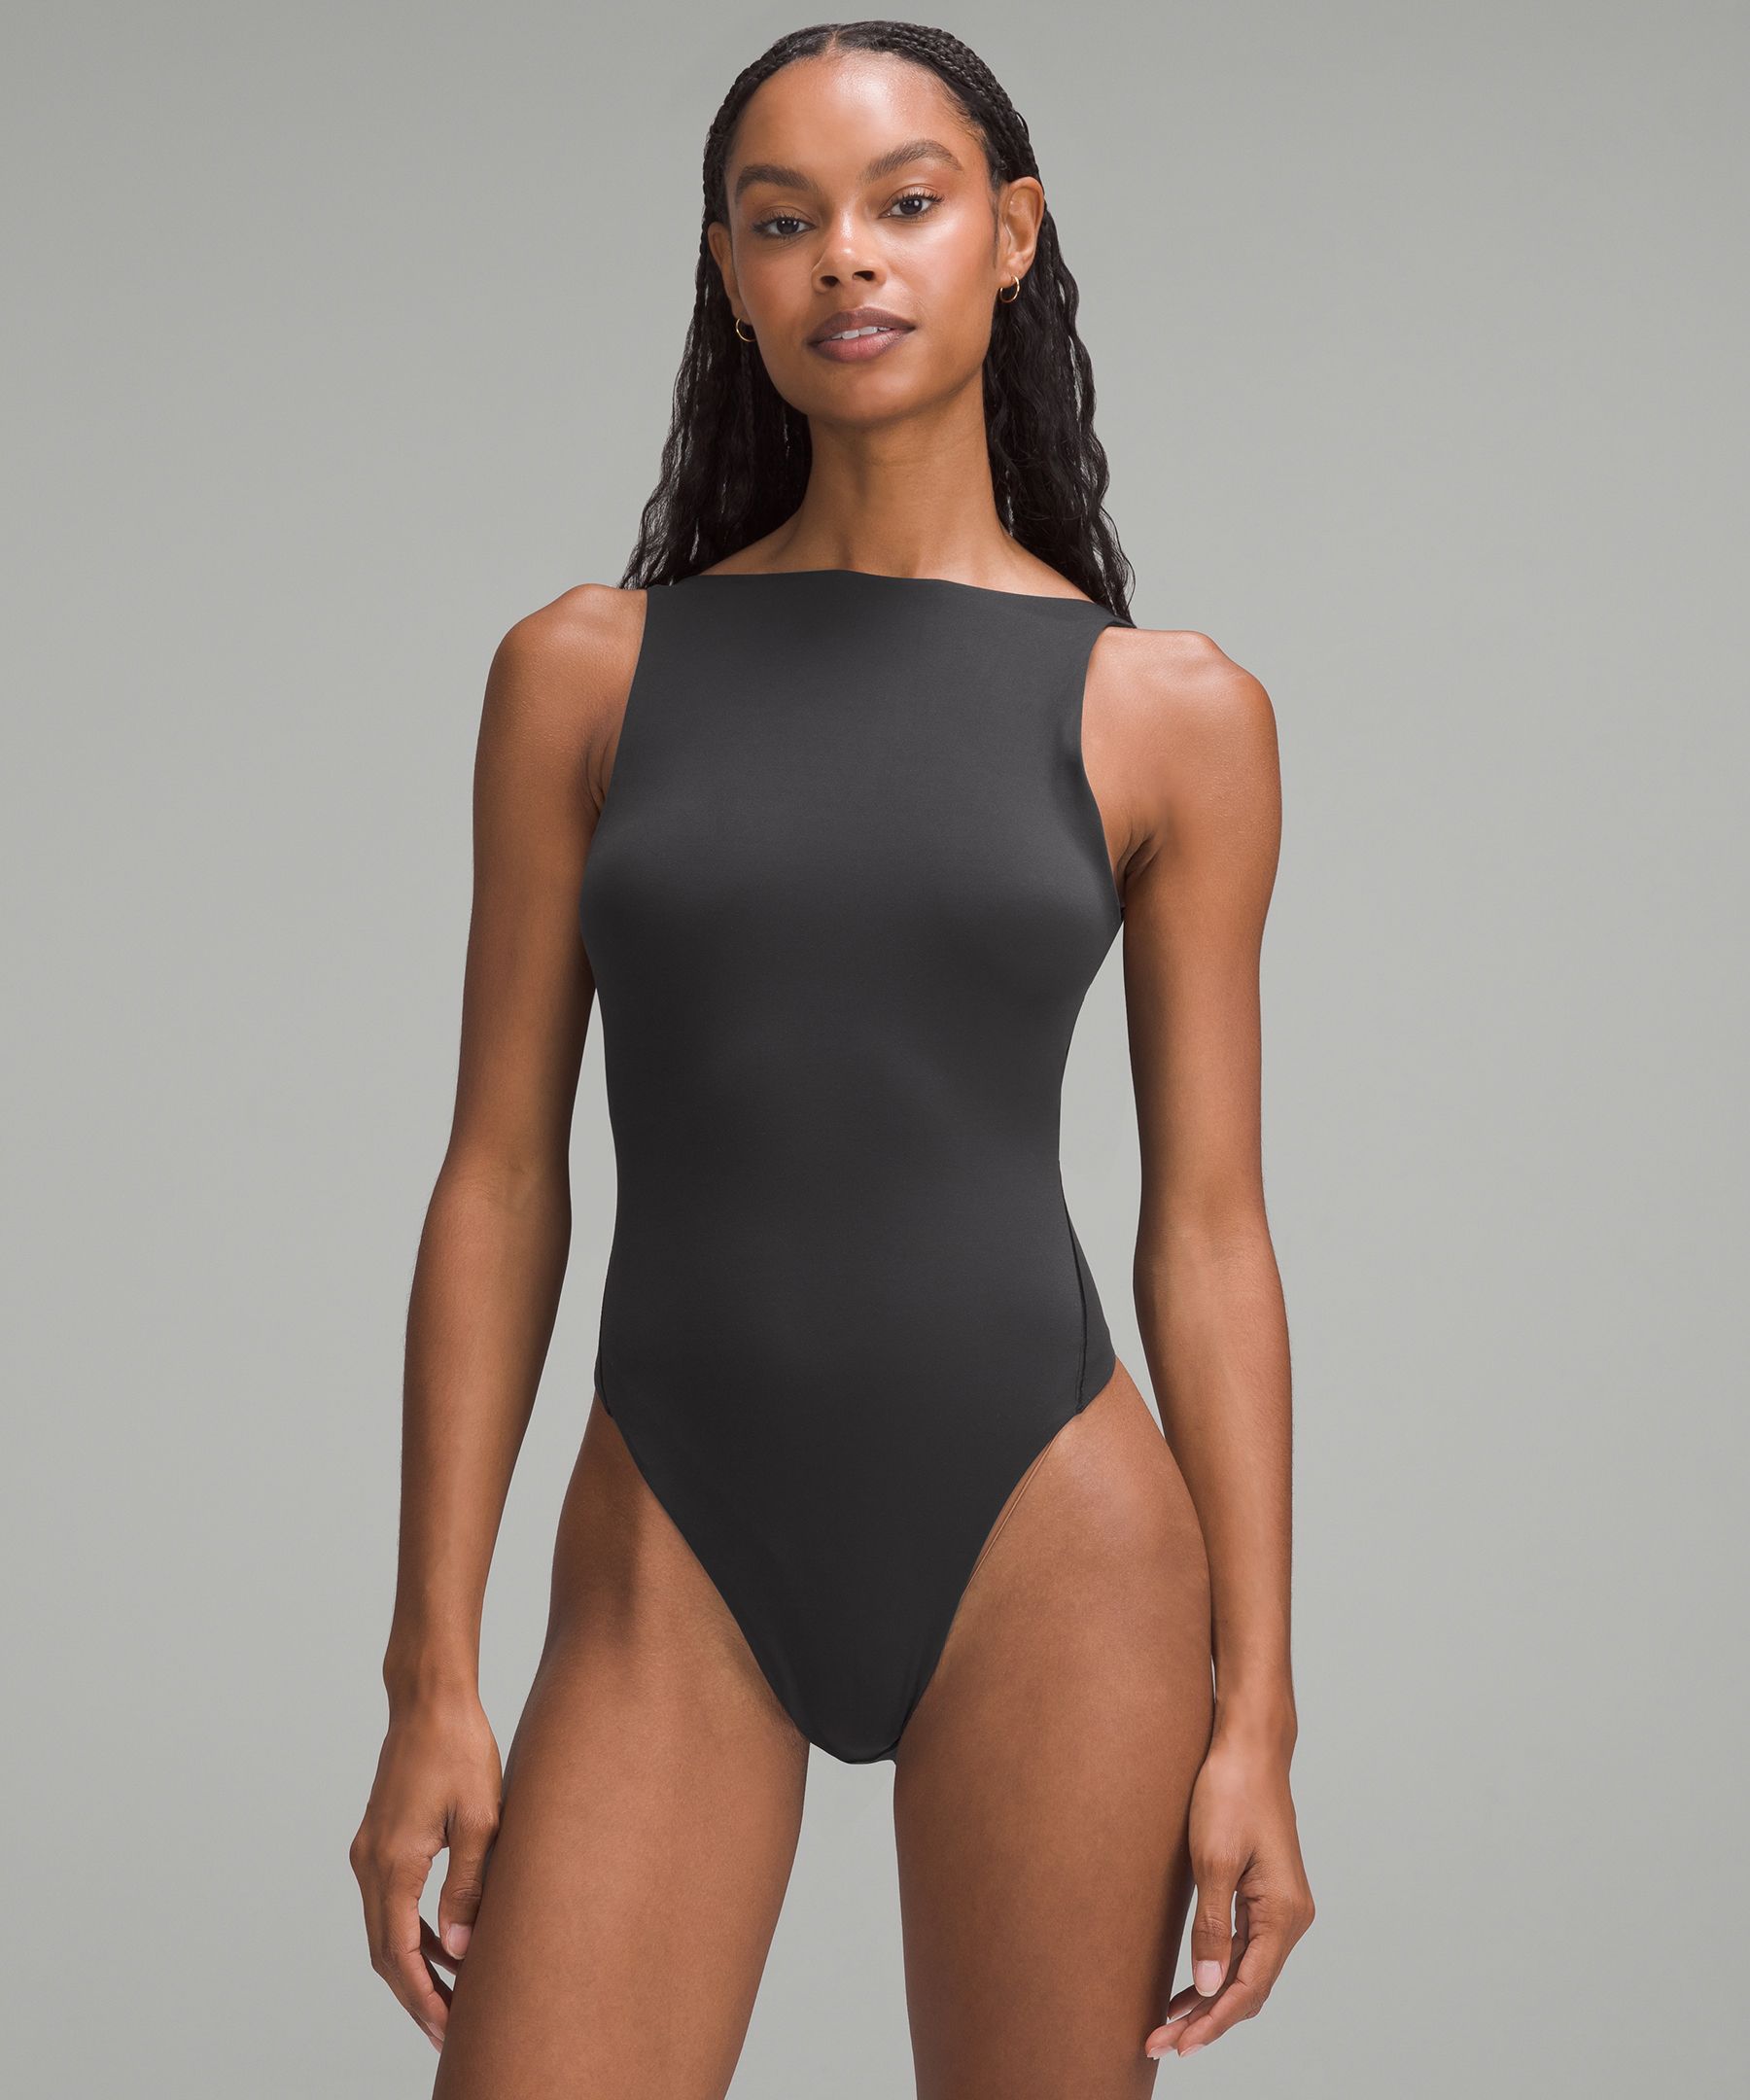 Wundermost Ultra-Soft Nulu Super-High-Cut Bodysuit | Women's Bodysuits